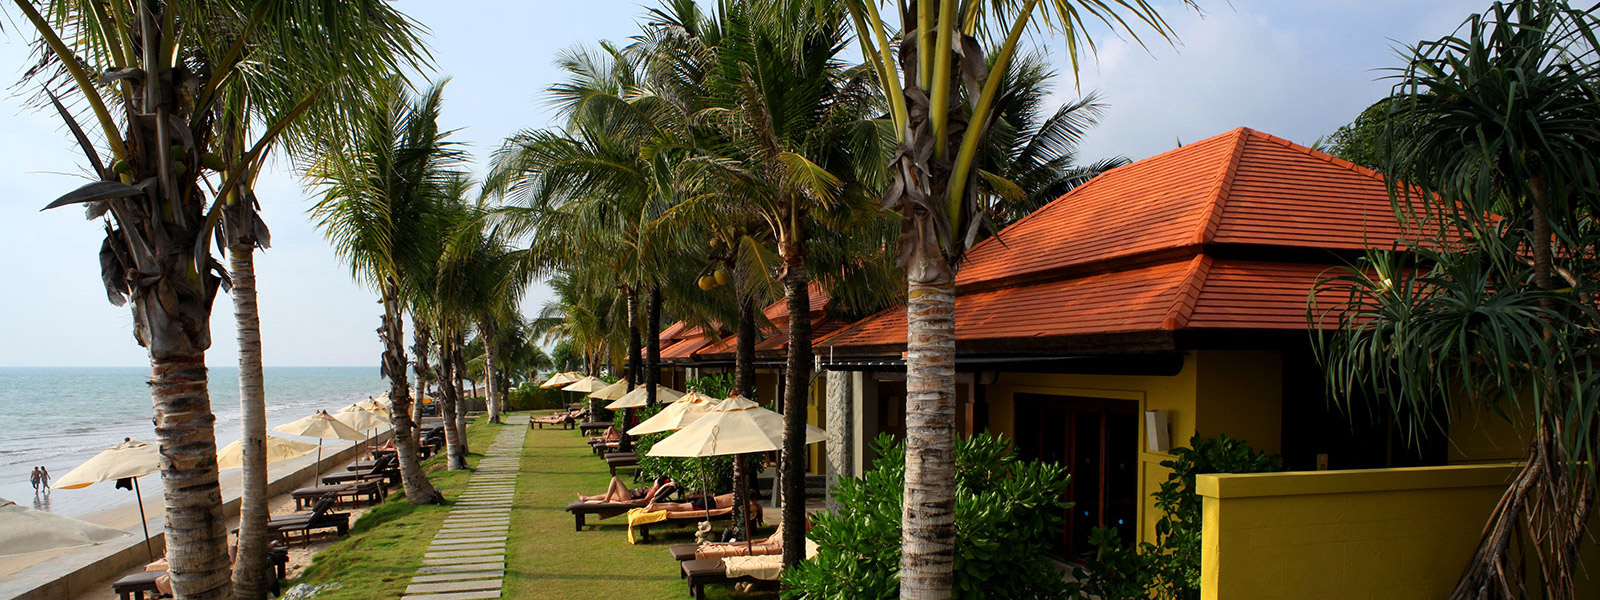 Chongfah Resort Khao Lak - Accommodation Seaview Bungalow